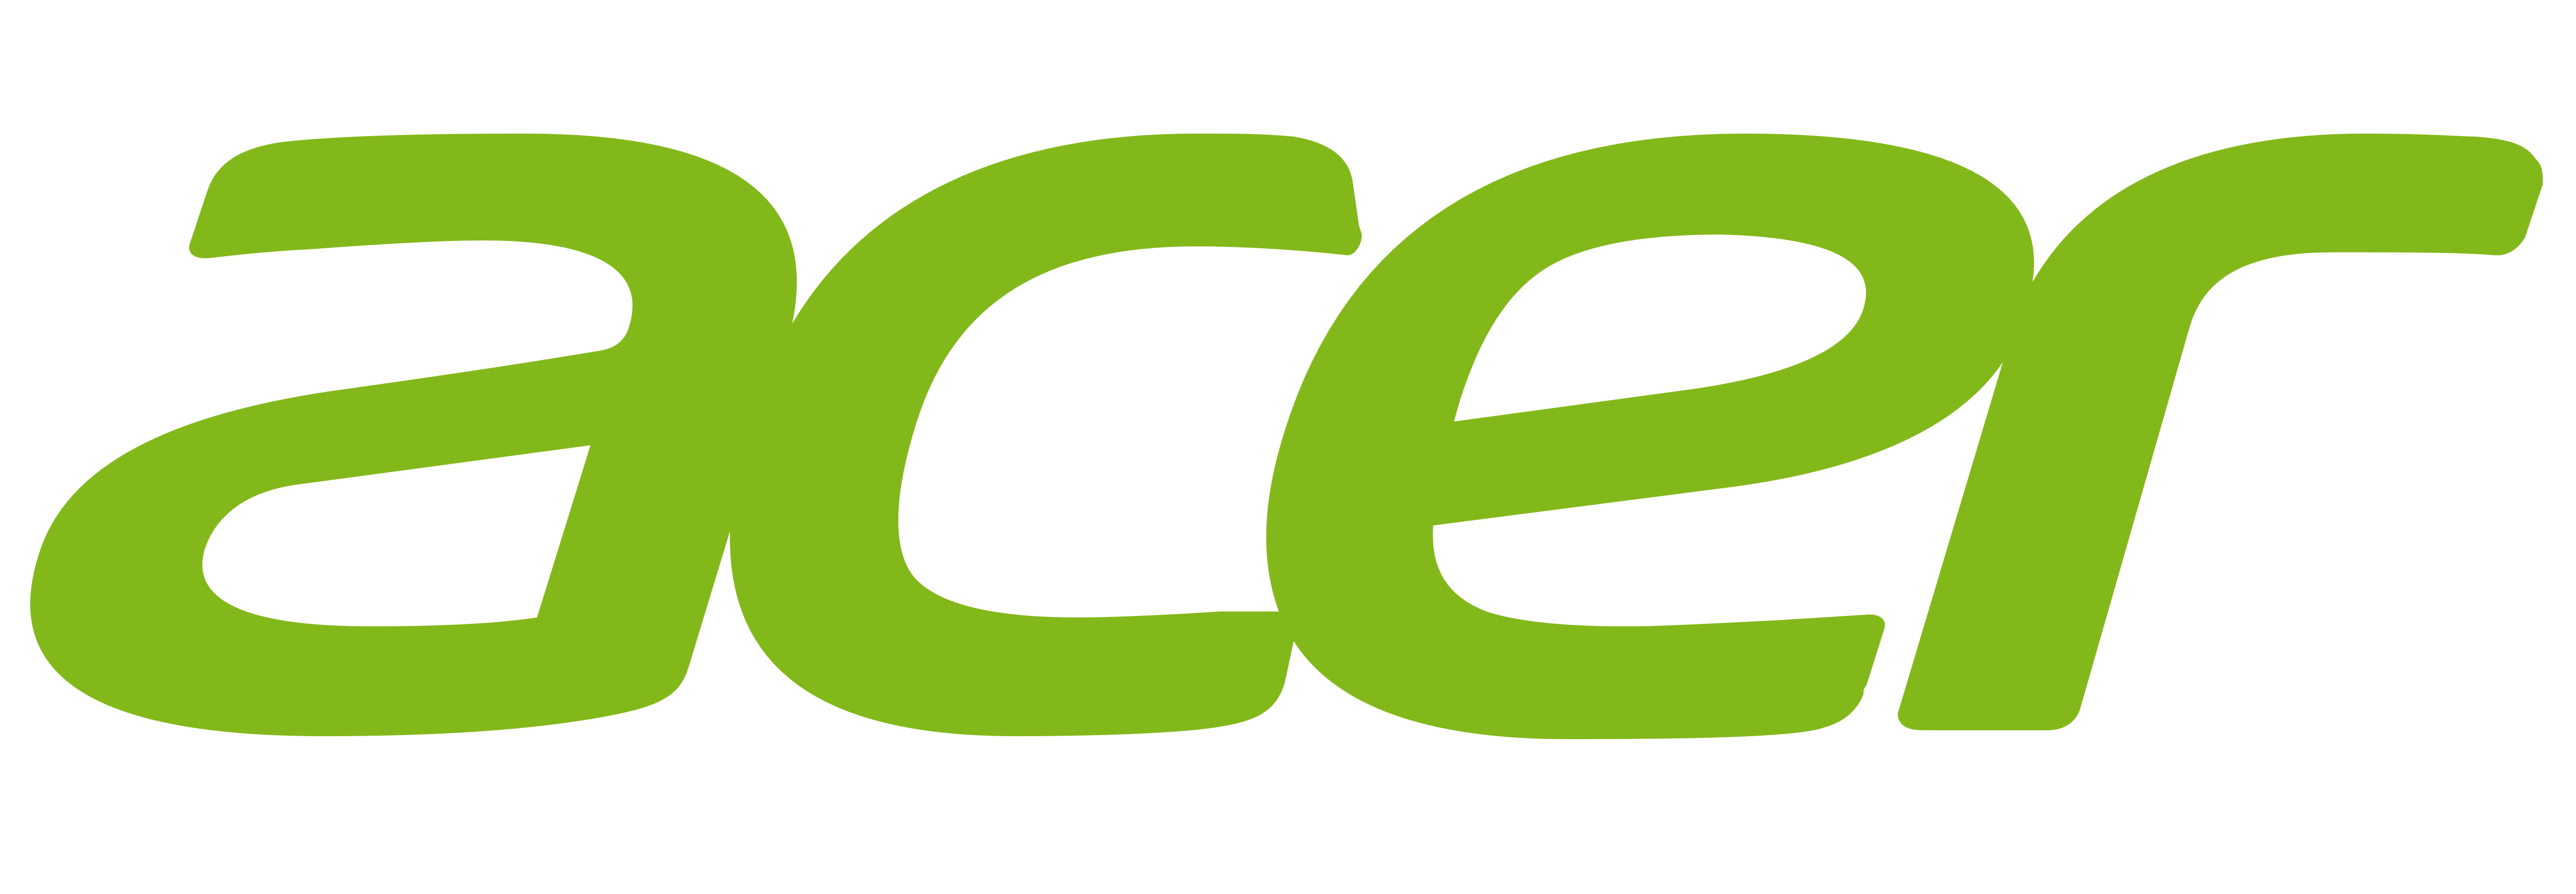 Acer logo, logotype